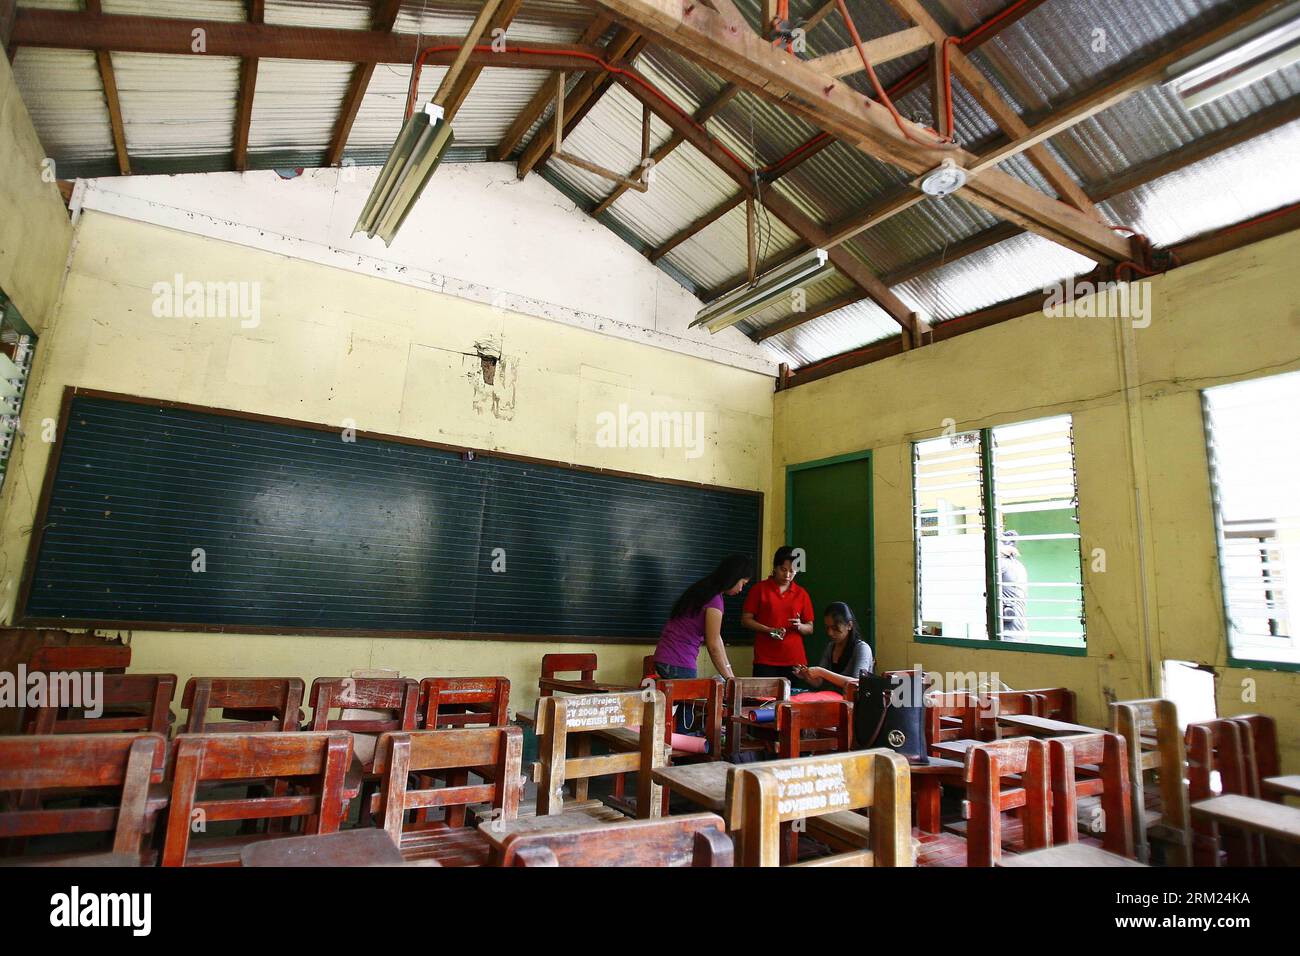 Bildnummer : 59690000 Datum : 24.05.2013 Copyright : imago/Xinhua (130524) -- QUEZON CITY, 24 mai 2013 (Xinhua) -- des enseignants réparent une pièce usée qui sera utilisée pour l'année scolaire à venir à Bagong Silangan Elementary School de Quezon City, Philippines, 24 mai 2013. Le ministère de l'éducation (DepEd) des Philippines s'attend à ce qu'environ 23,8 millions d'élèves fréquentent des écoles primaires et secondaires publiques et privées dans tout le pays pour l'année scolaire 2013-2014 qui commence le 3 juin. (Xinhua/Rouelle Umali) PHILIPPINES-QUEZON CITY-SCHOOL YEAR PRÉPARATION PUBLICATIONxNOTxINxCHN xcb x0x 2013 quer 5 Banque D'Images